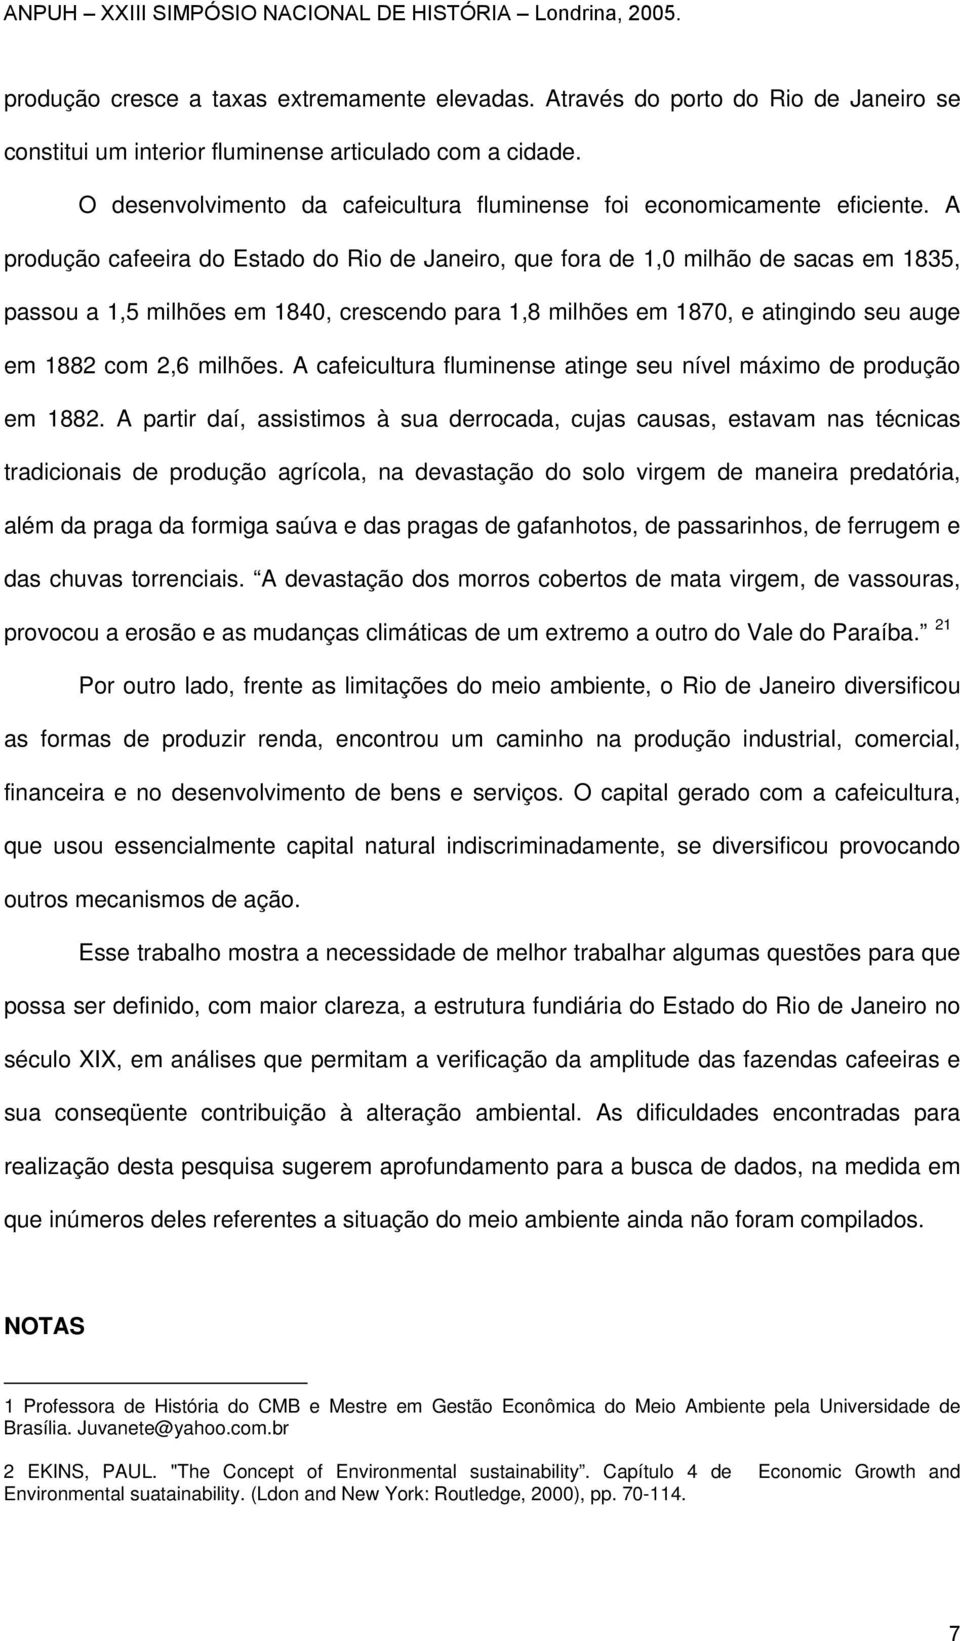 A produção cafeeira do Estado do Rio de Janeiro, que fora de 1,0 milhão de sacas em 1835, passou a 1,5 milhões em 1840, crescendo para 1,8 milhões em 1870, e atingindo seu auge em 1882 com 2,6